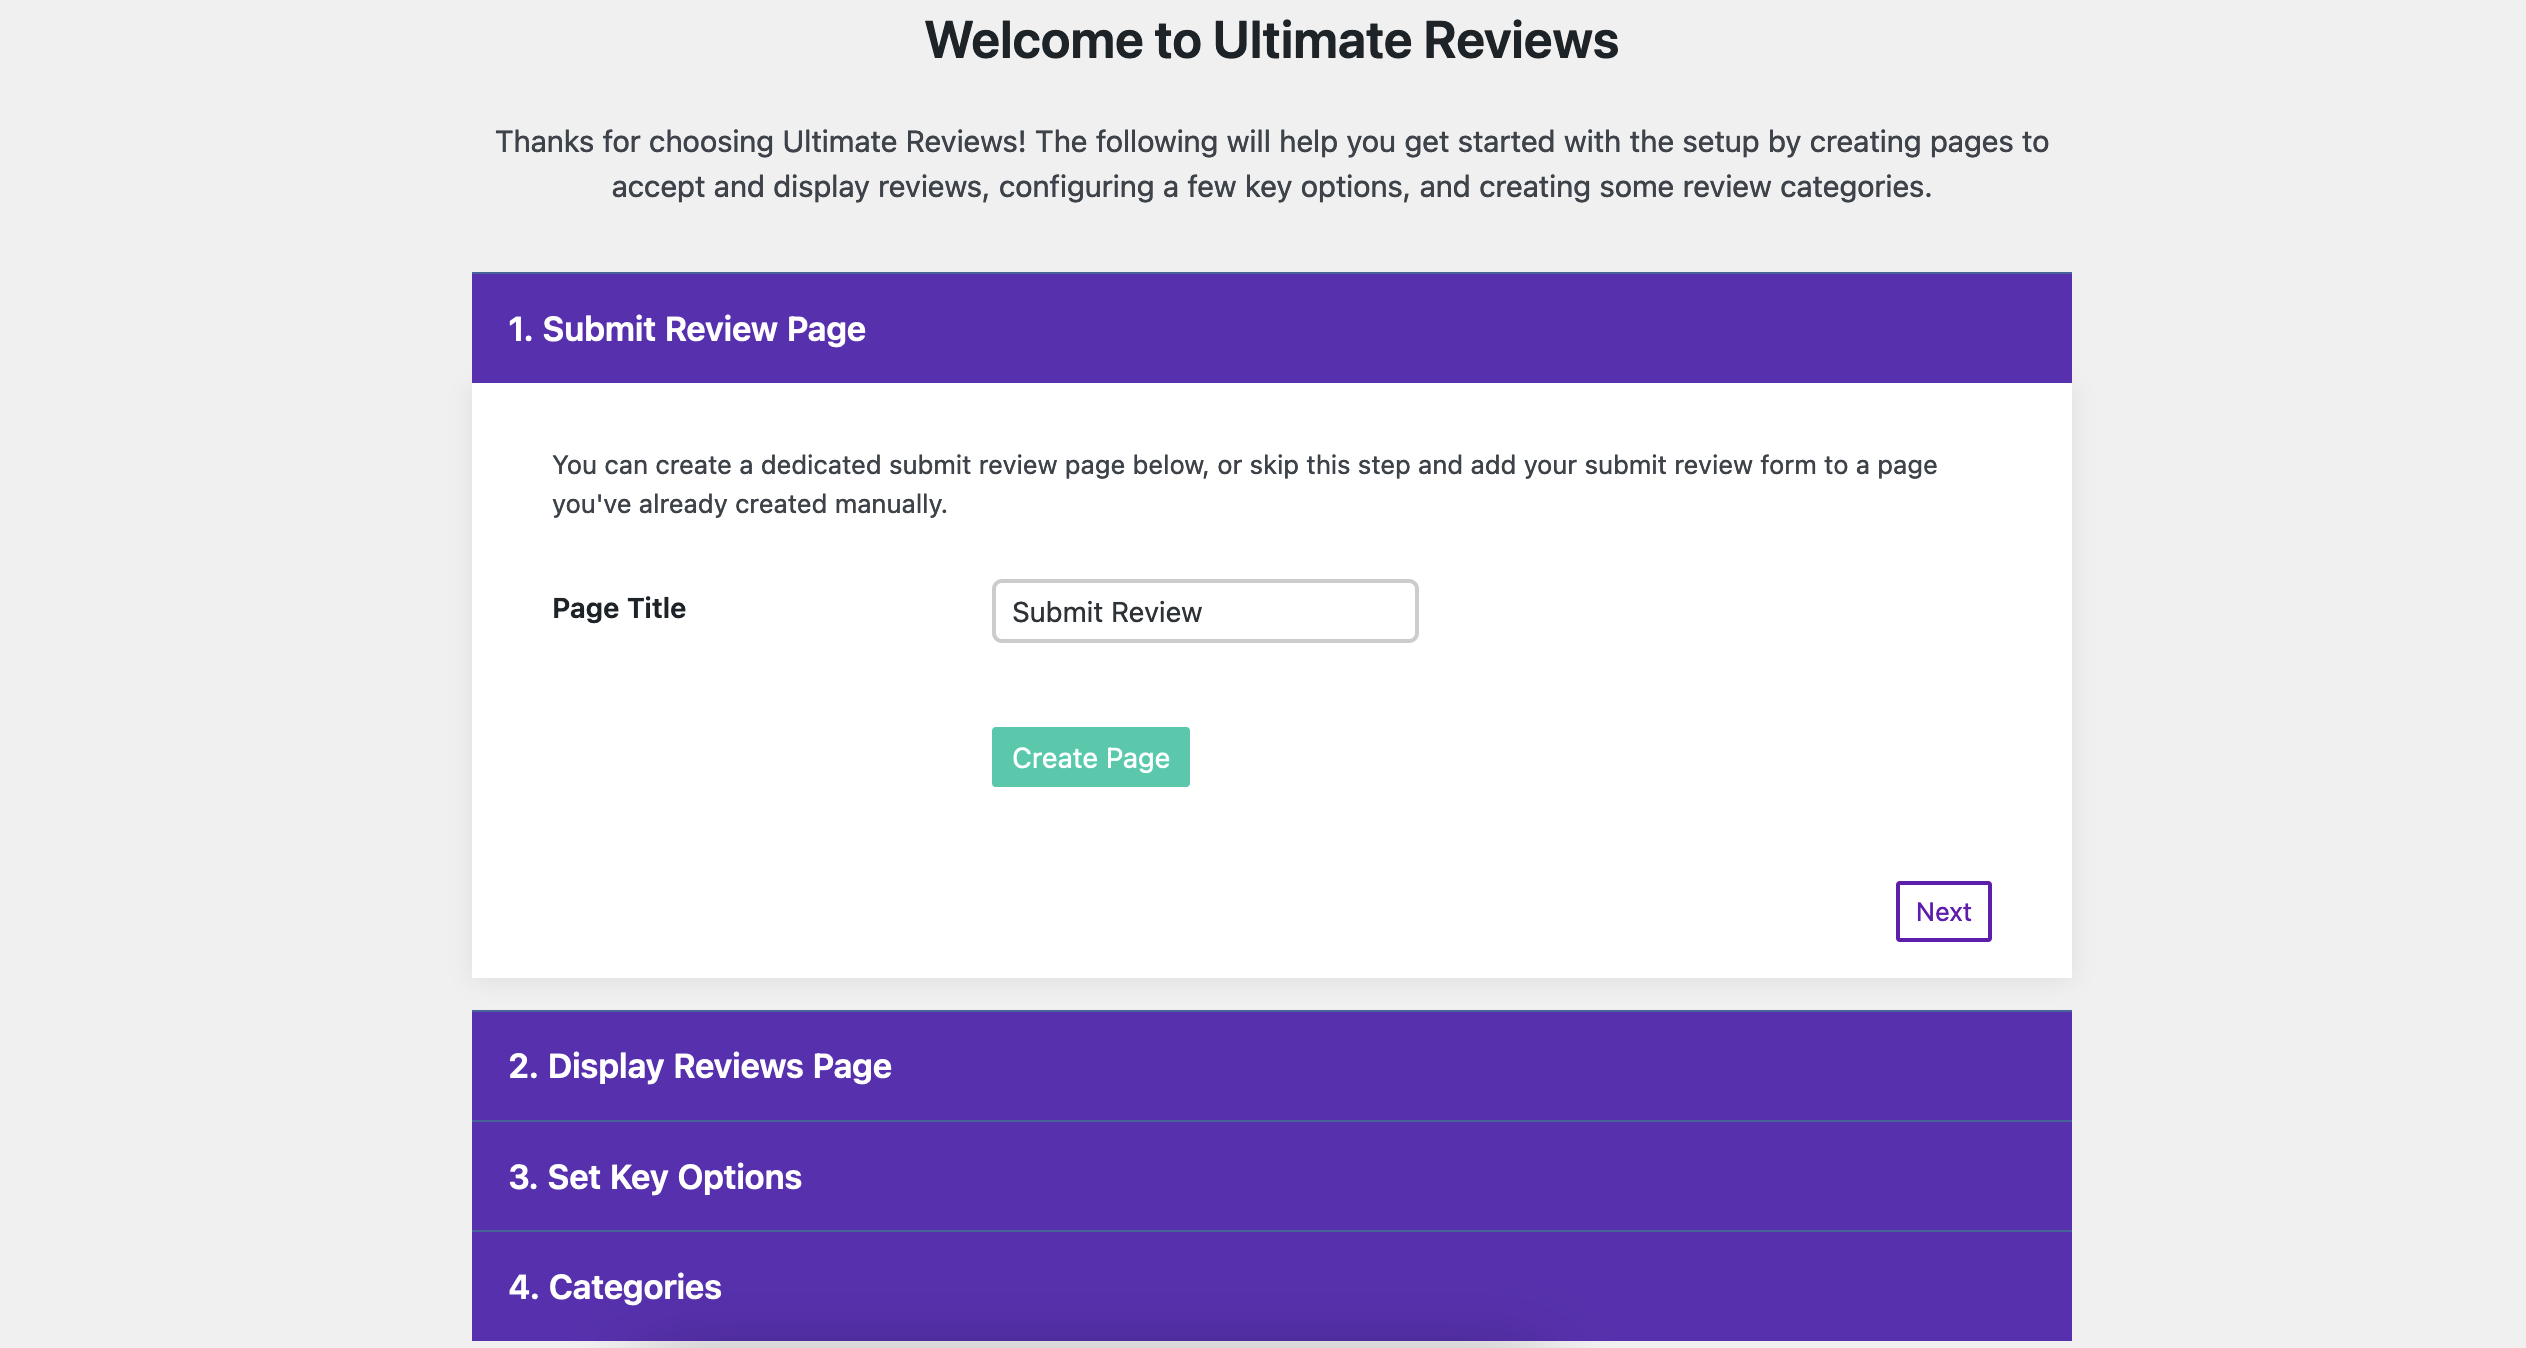 Screenshot of Ultimate Reviews walk-through